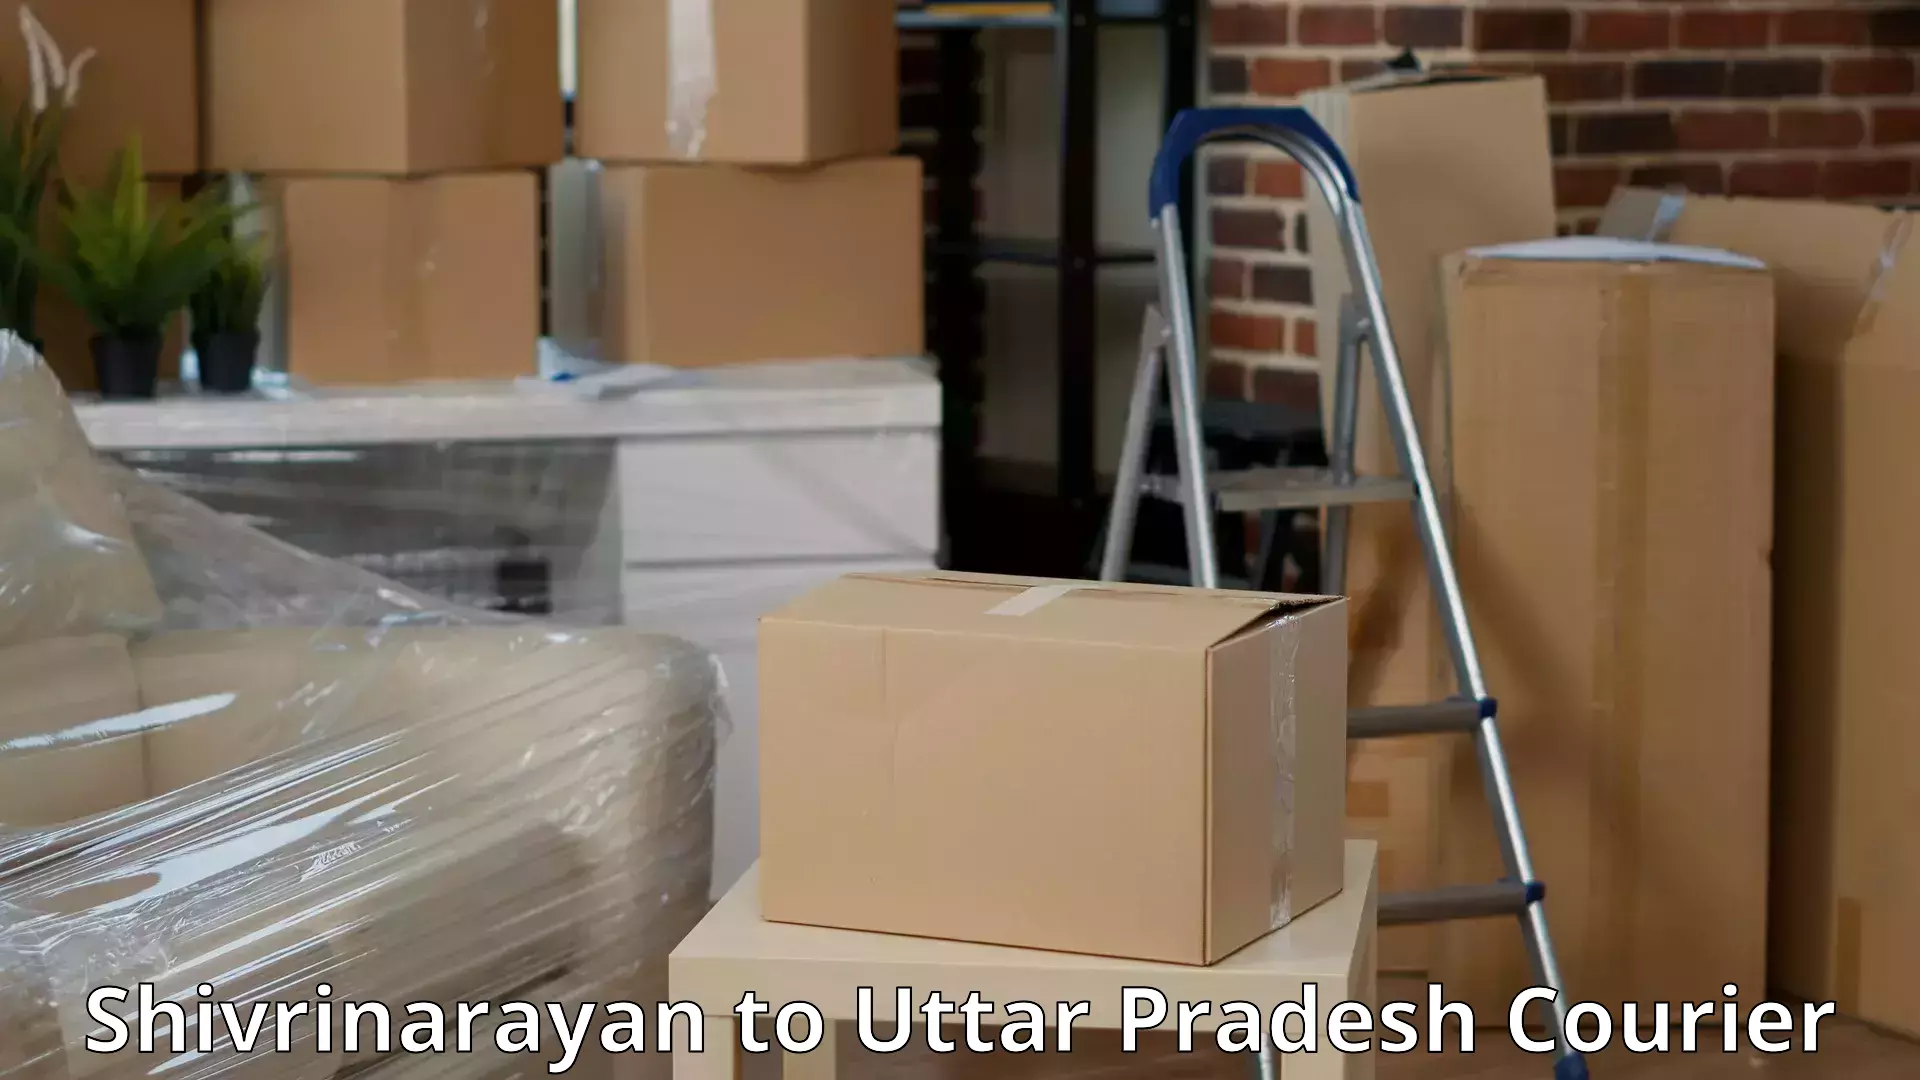 Professional movers Shivrinarayan to Sirathu